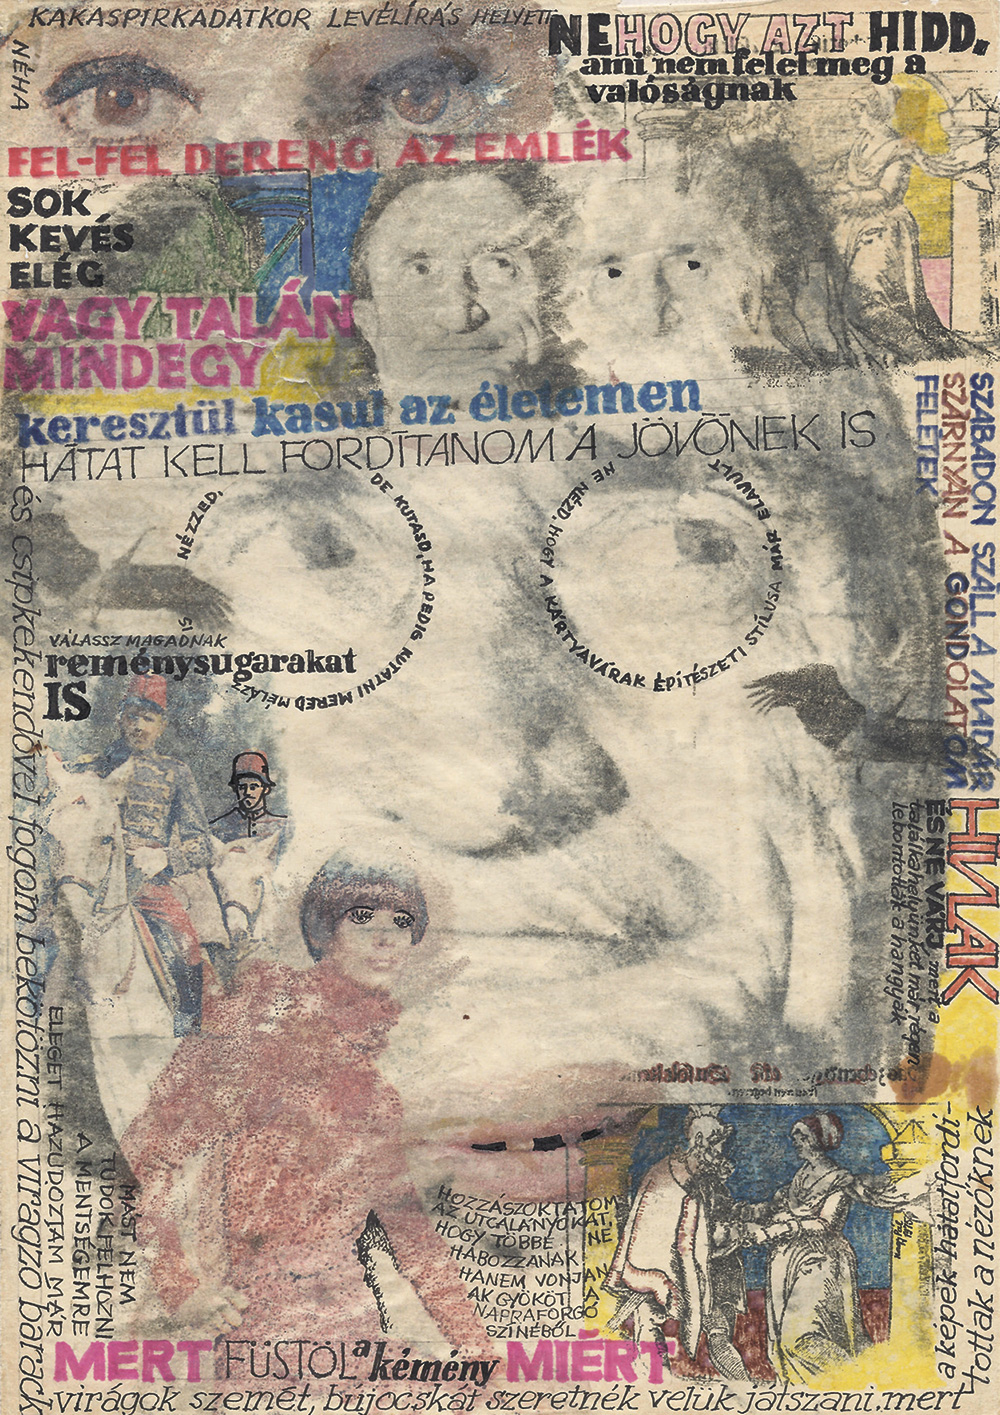 Nagy Pál: El nem küldött képlevelek 2, 1970 es évek, 24,5×20,5 cm